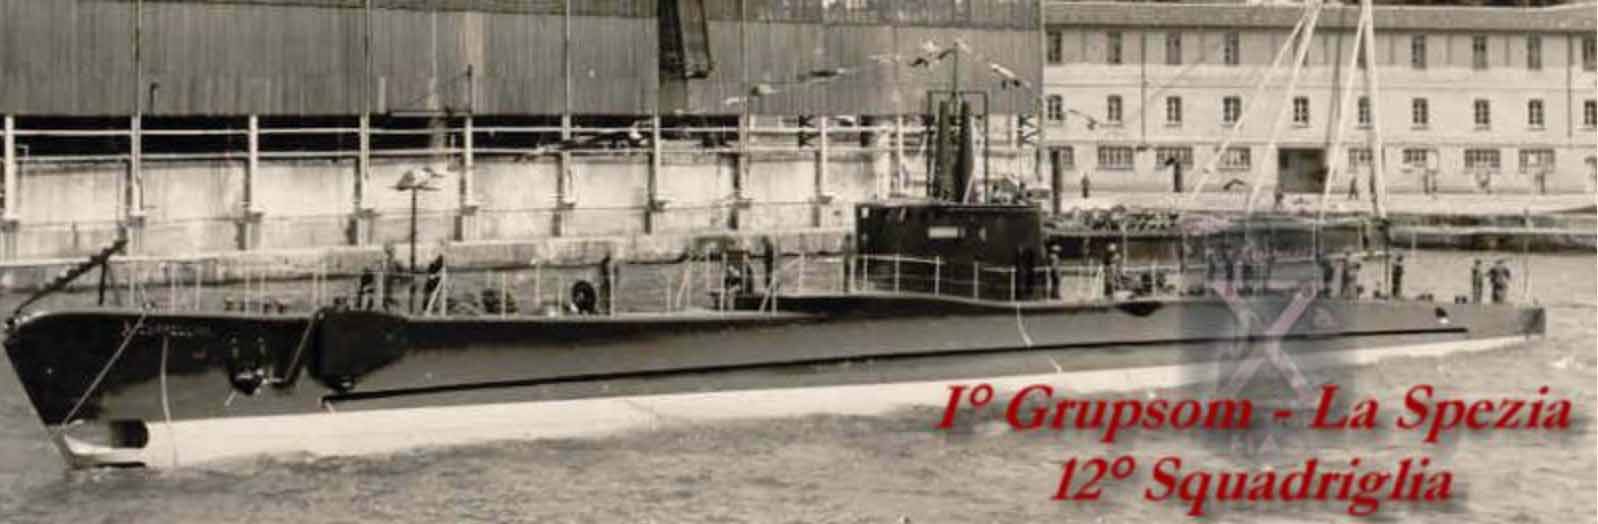 カッペリーニ潜水艦